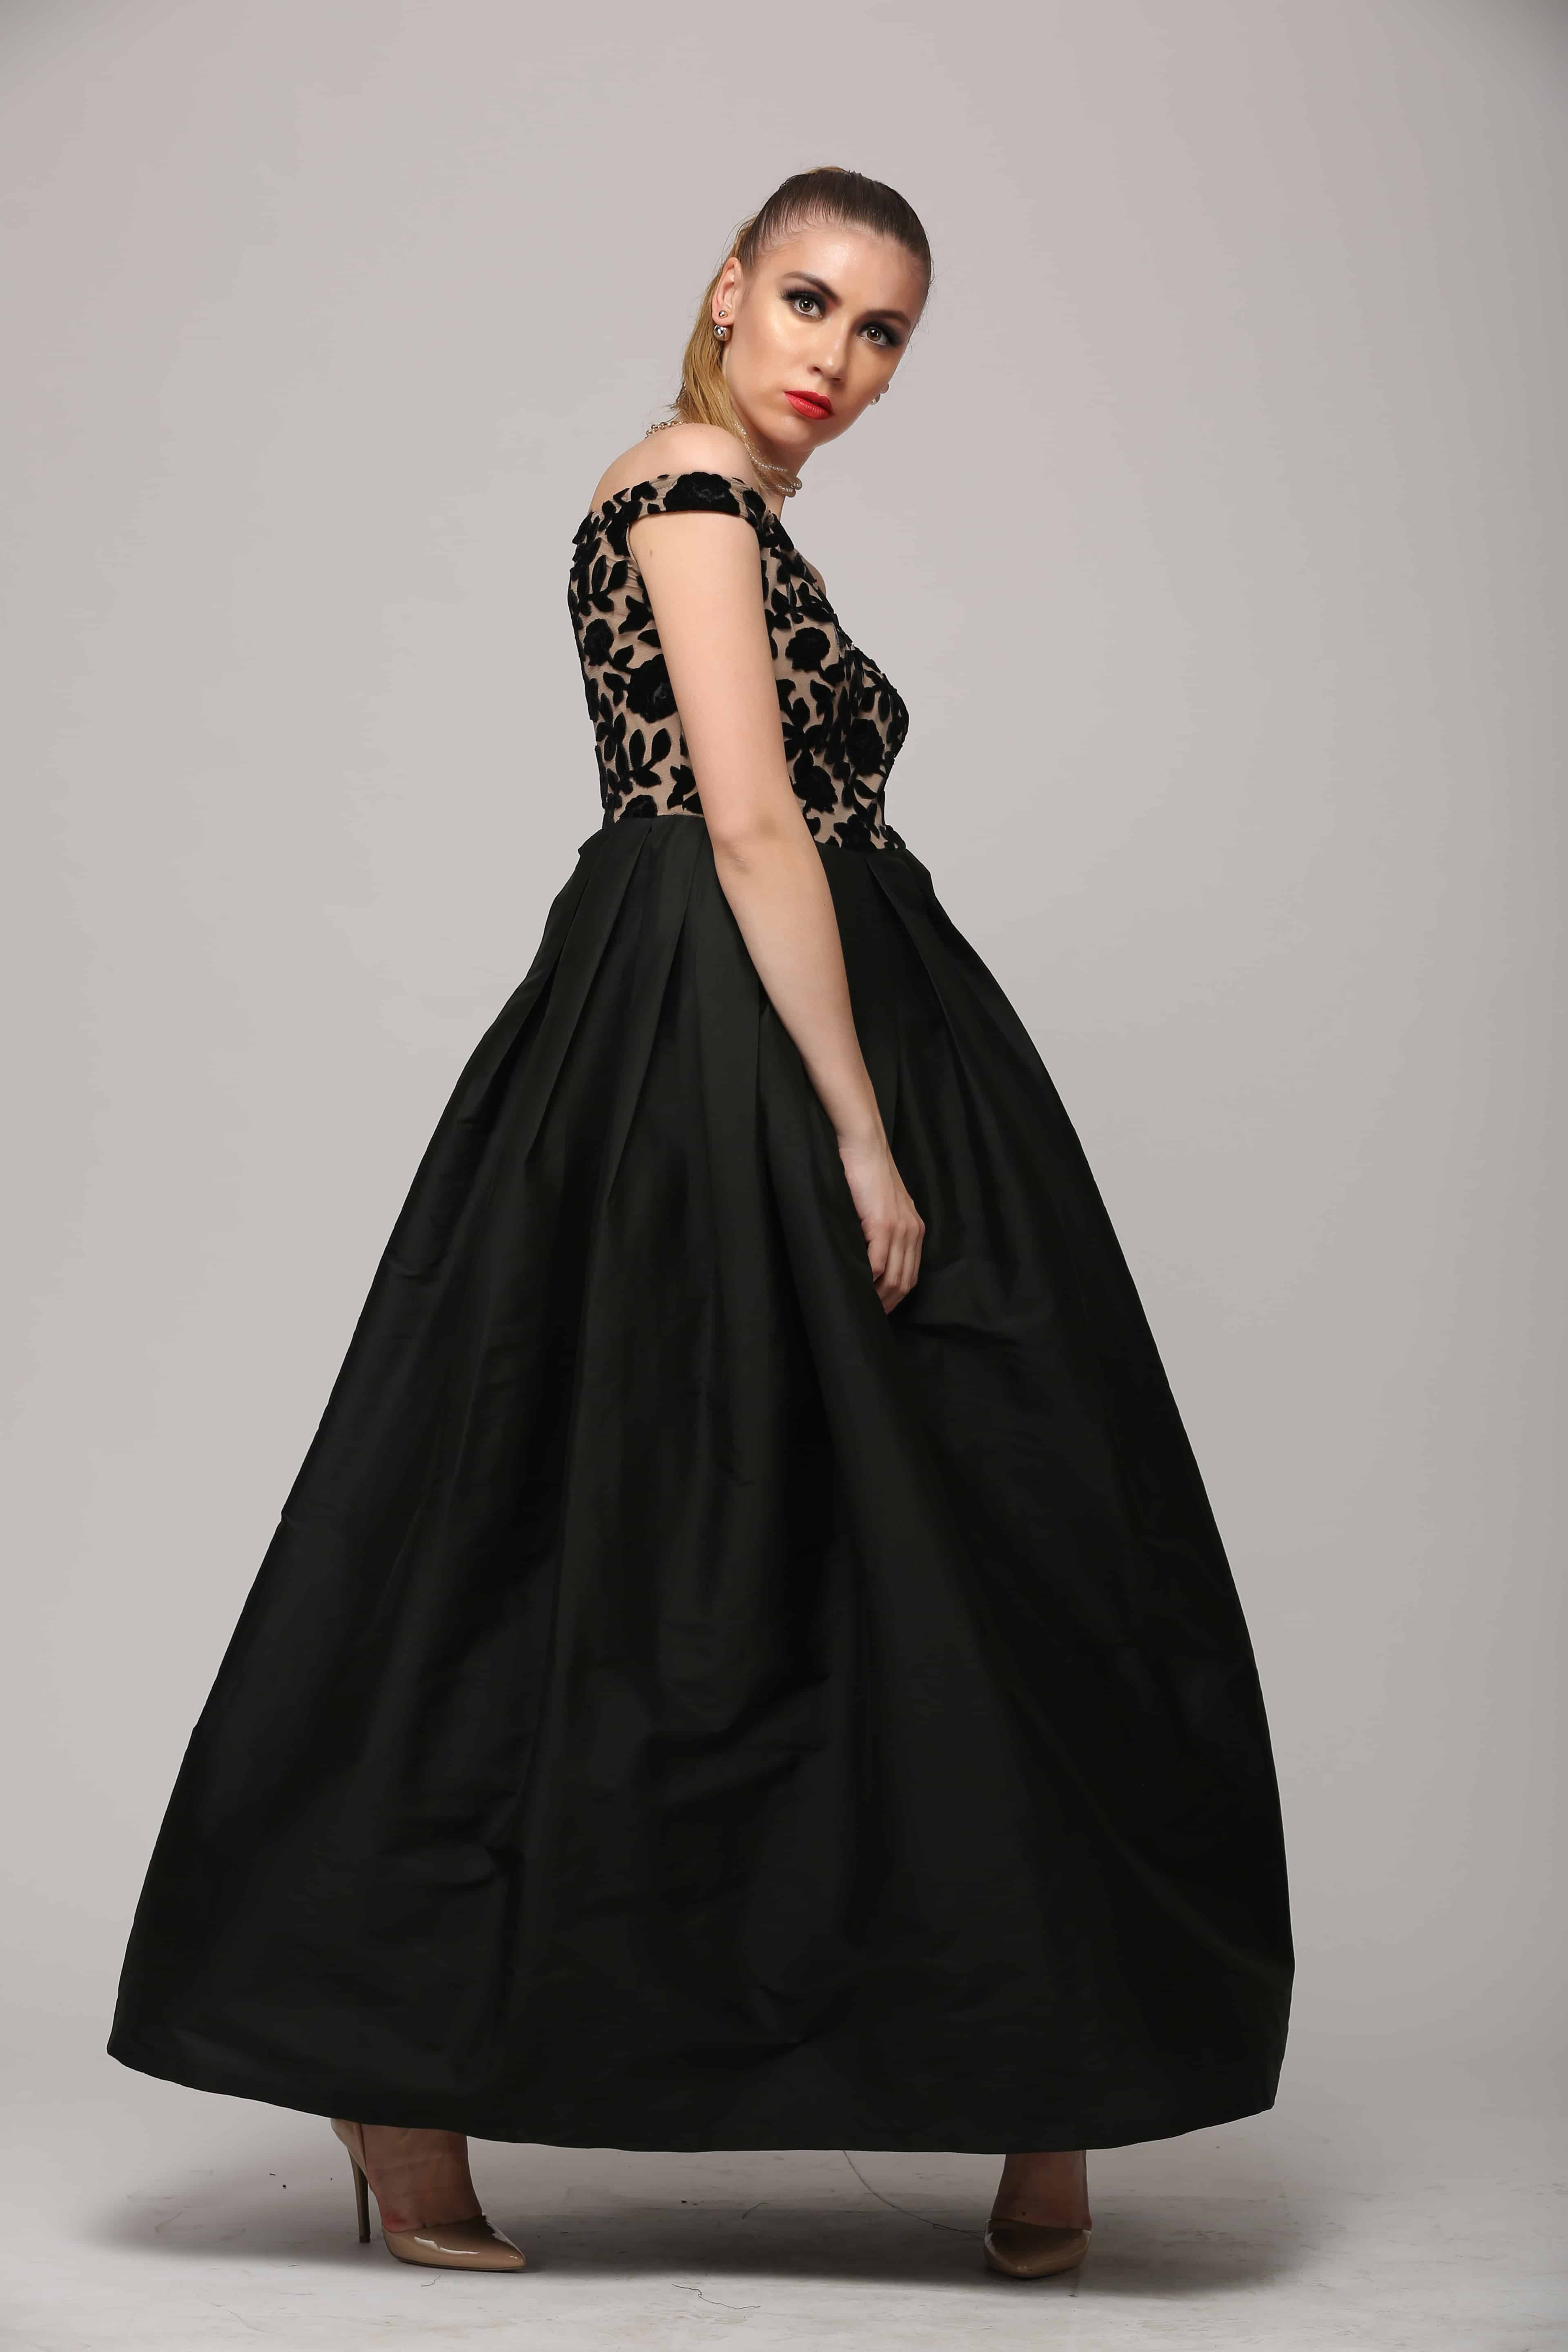 SAI 113 Sizzling Black Gown